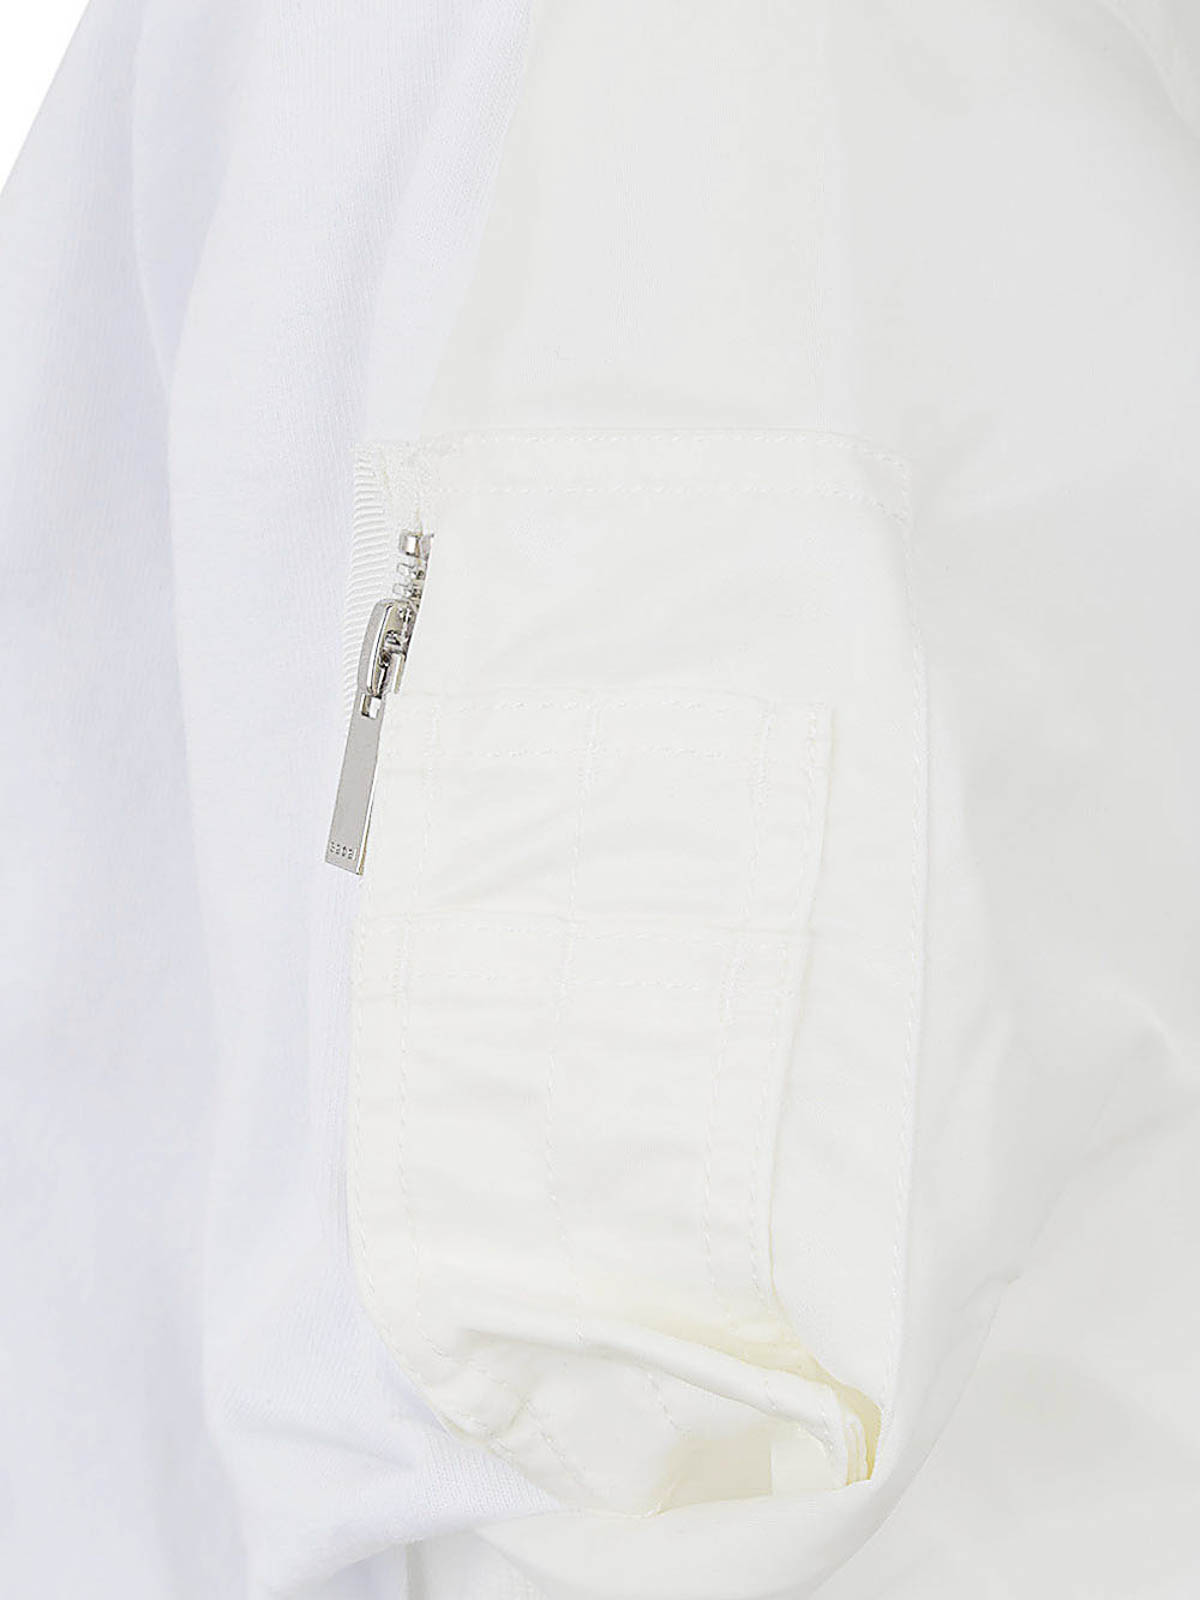 Shop Sacai Camiseta - Blanco In White